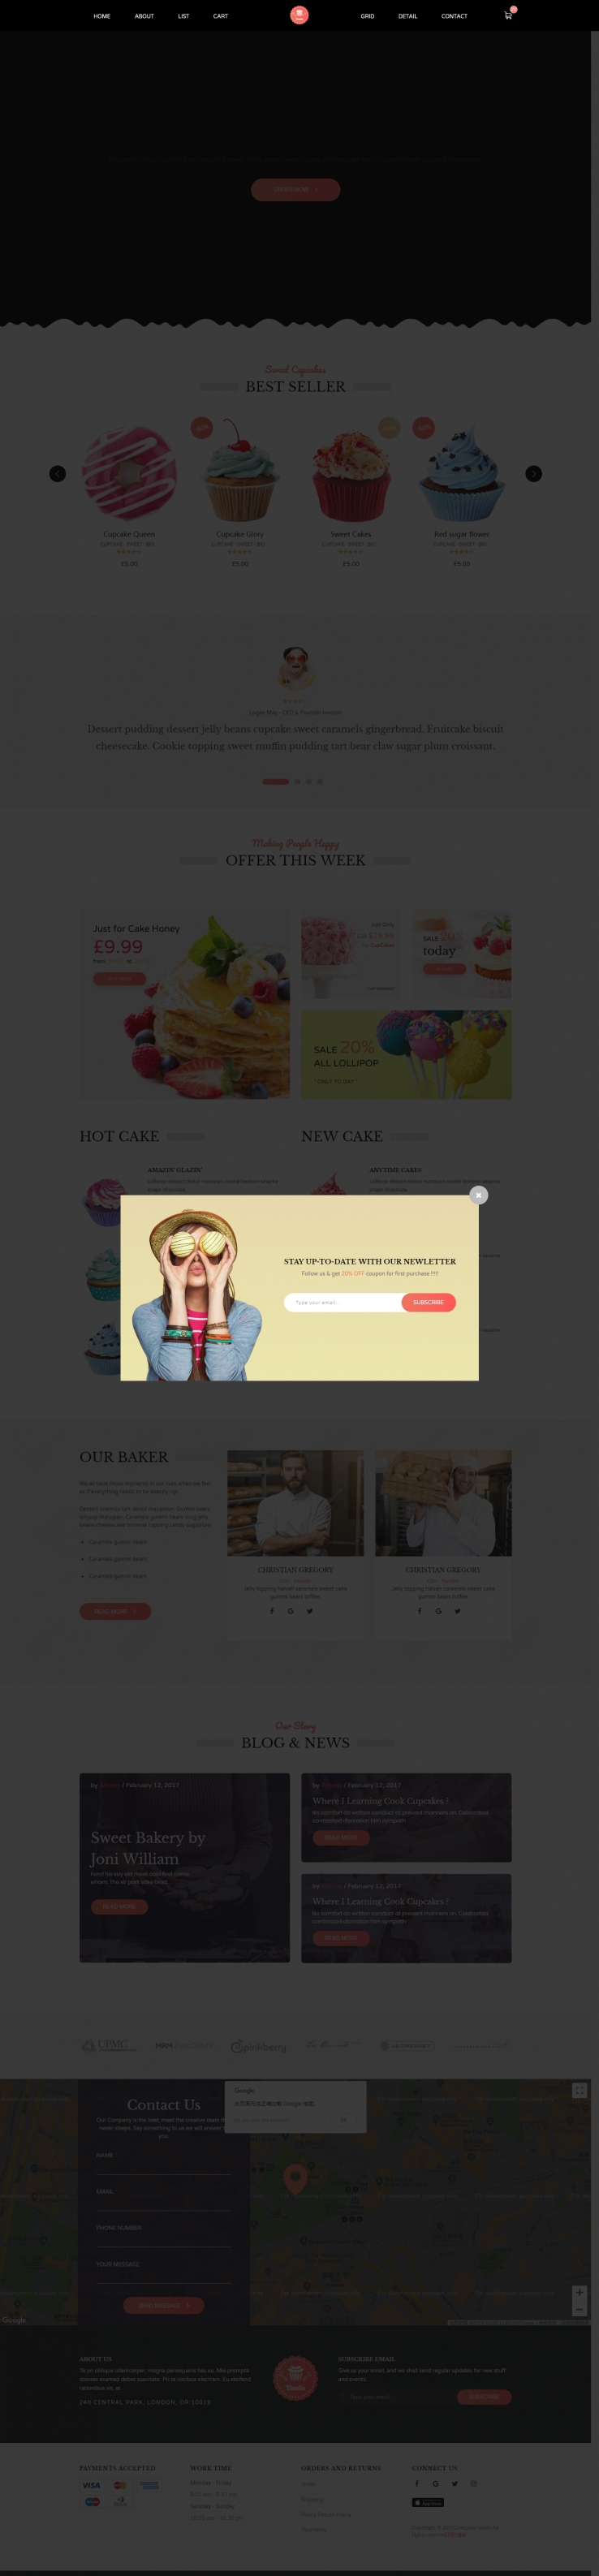 简洁白色风格的面包店网站模板下载